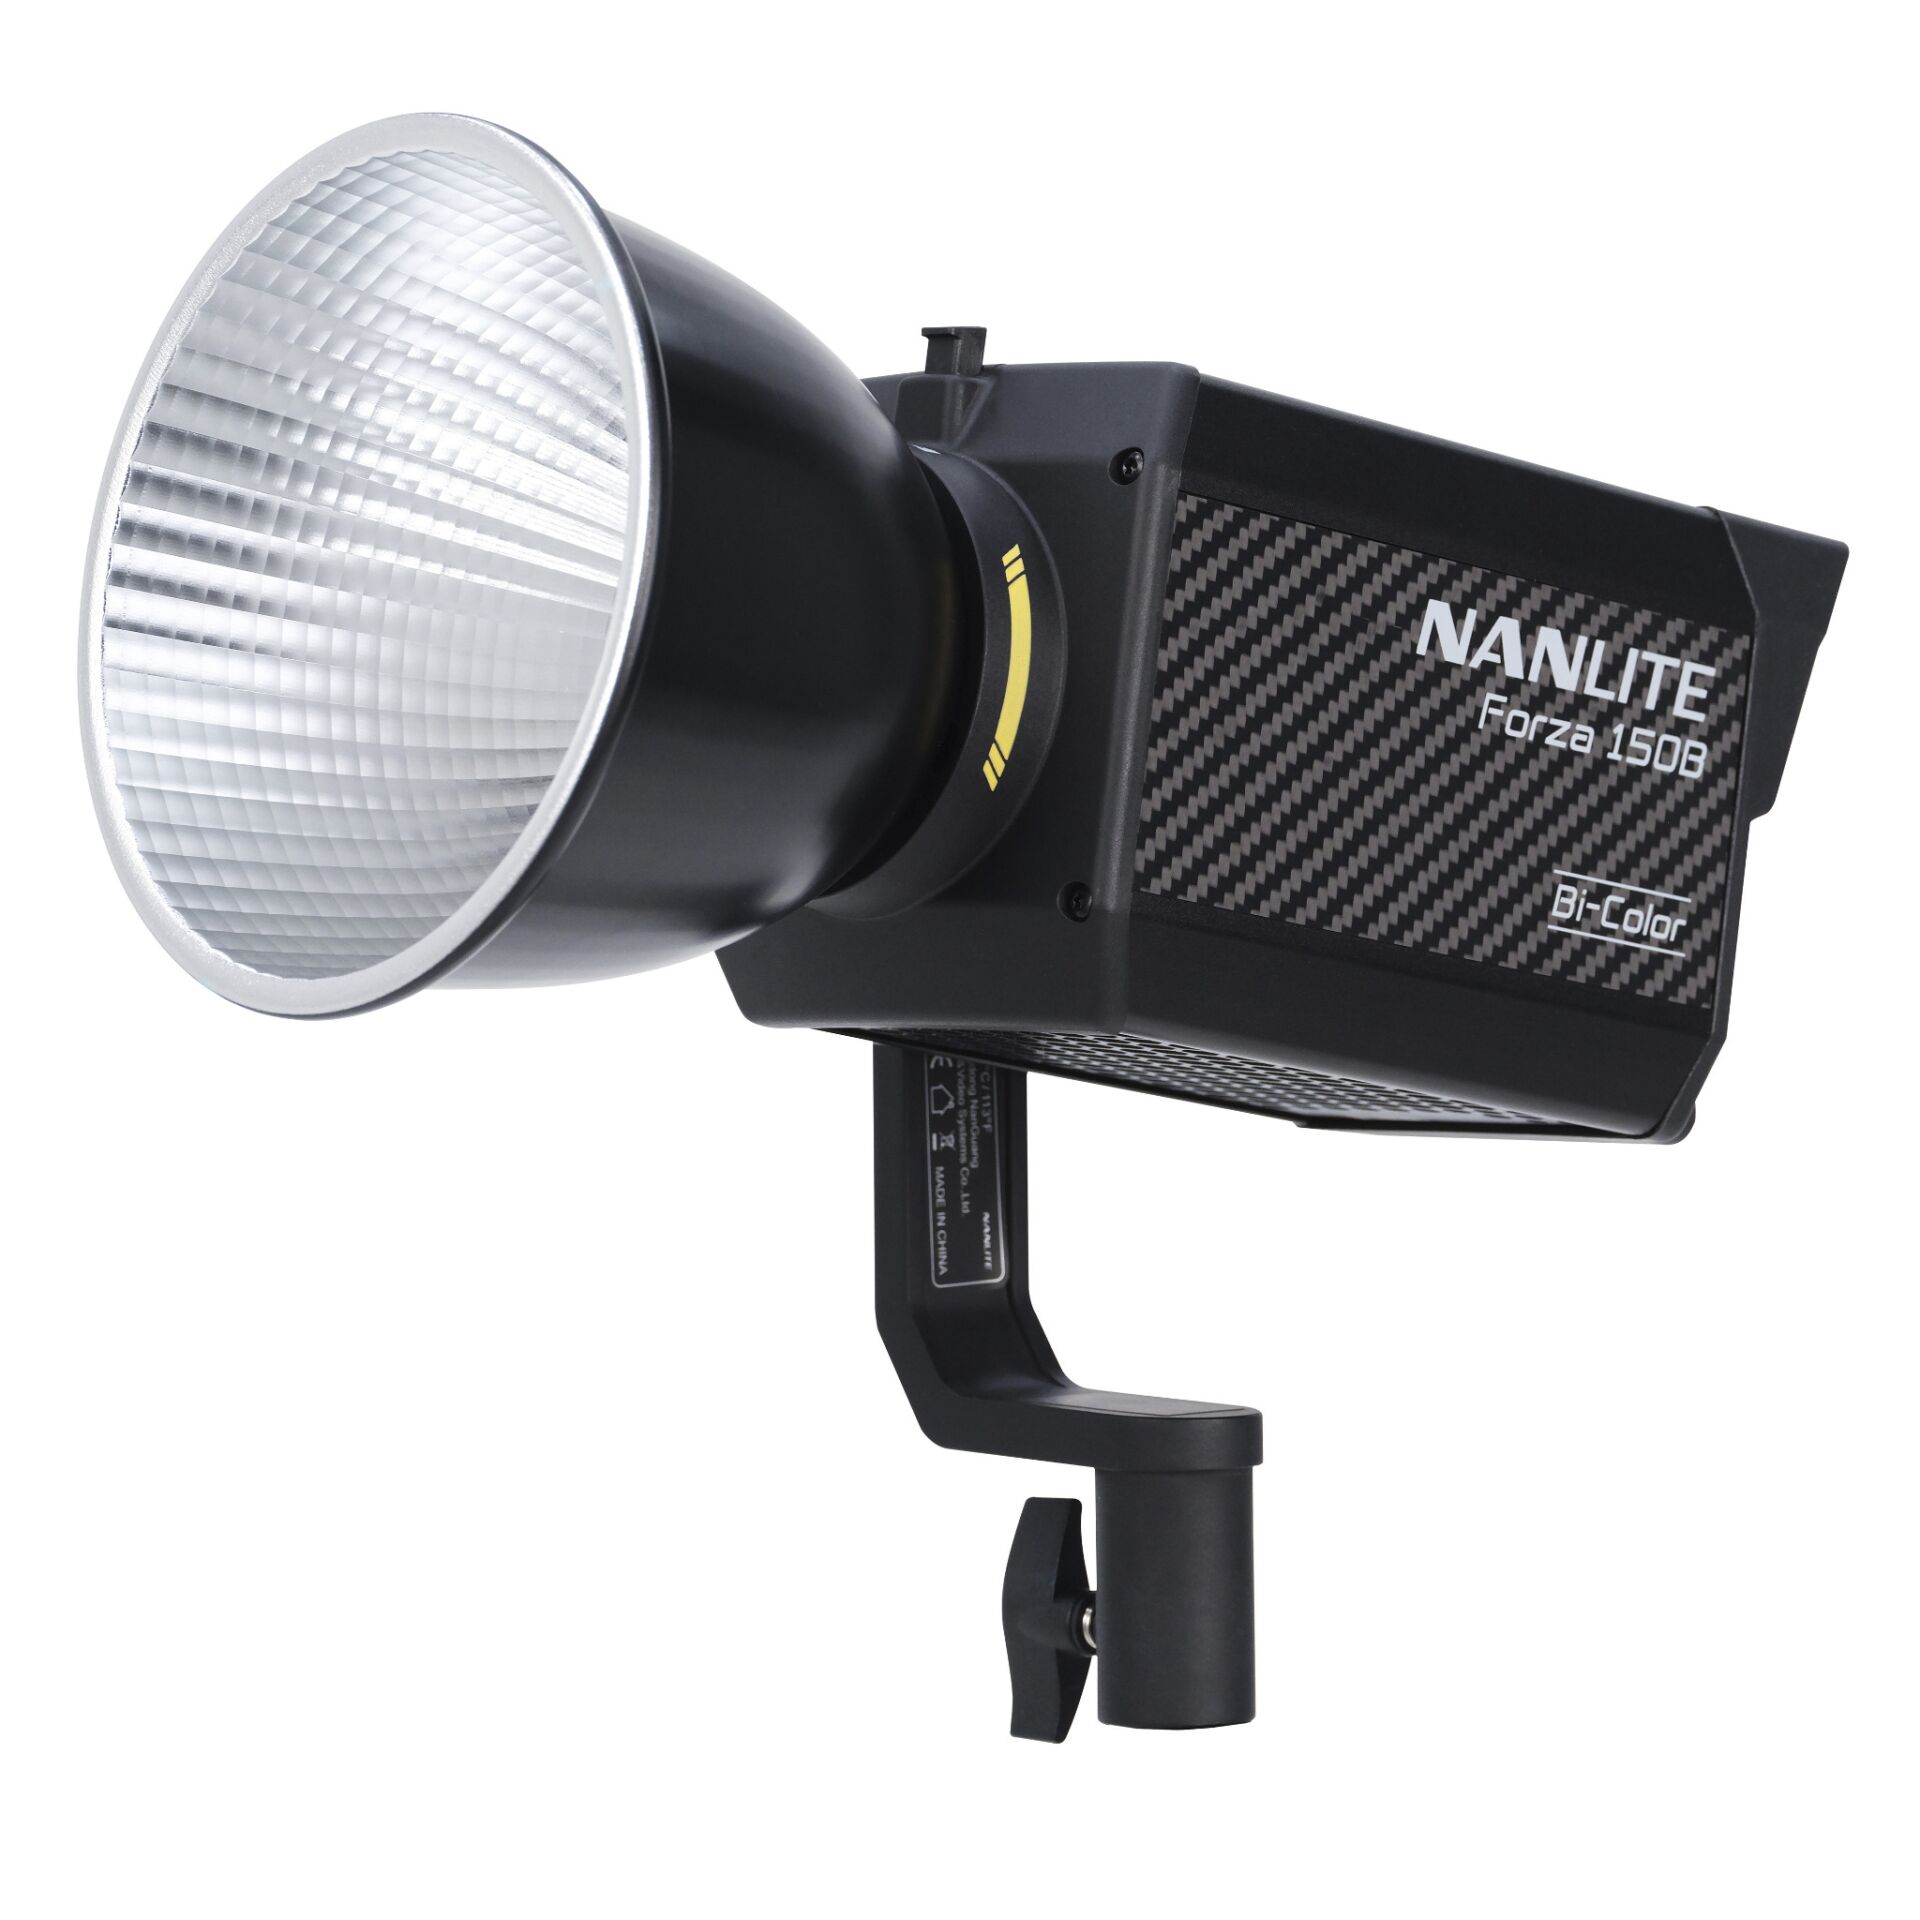 Nanlite Forza 150B Bi-Color